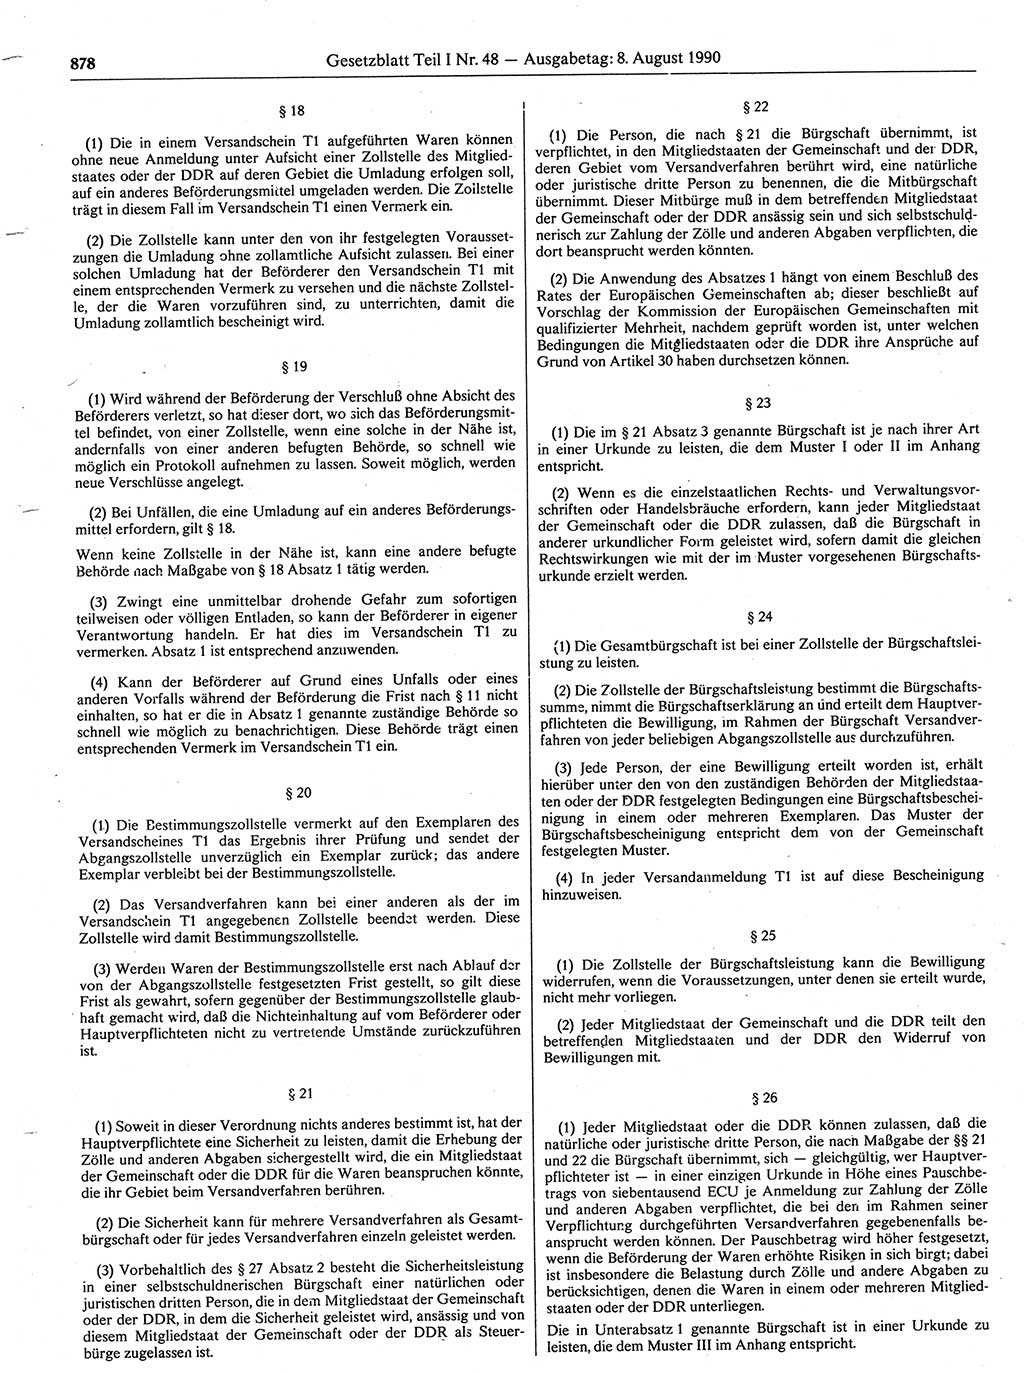 Gesetzblatt (GBl.) der Deutschen Demokratischen Republik (DDR) Teil Ⅰ 1990, Seite 878 (GBl. DDR Ⅰ 1990, S. 878)